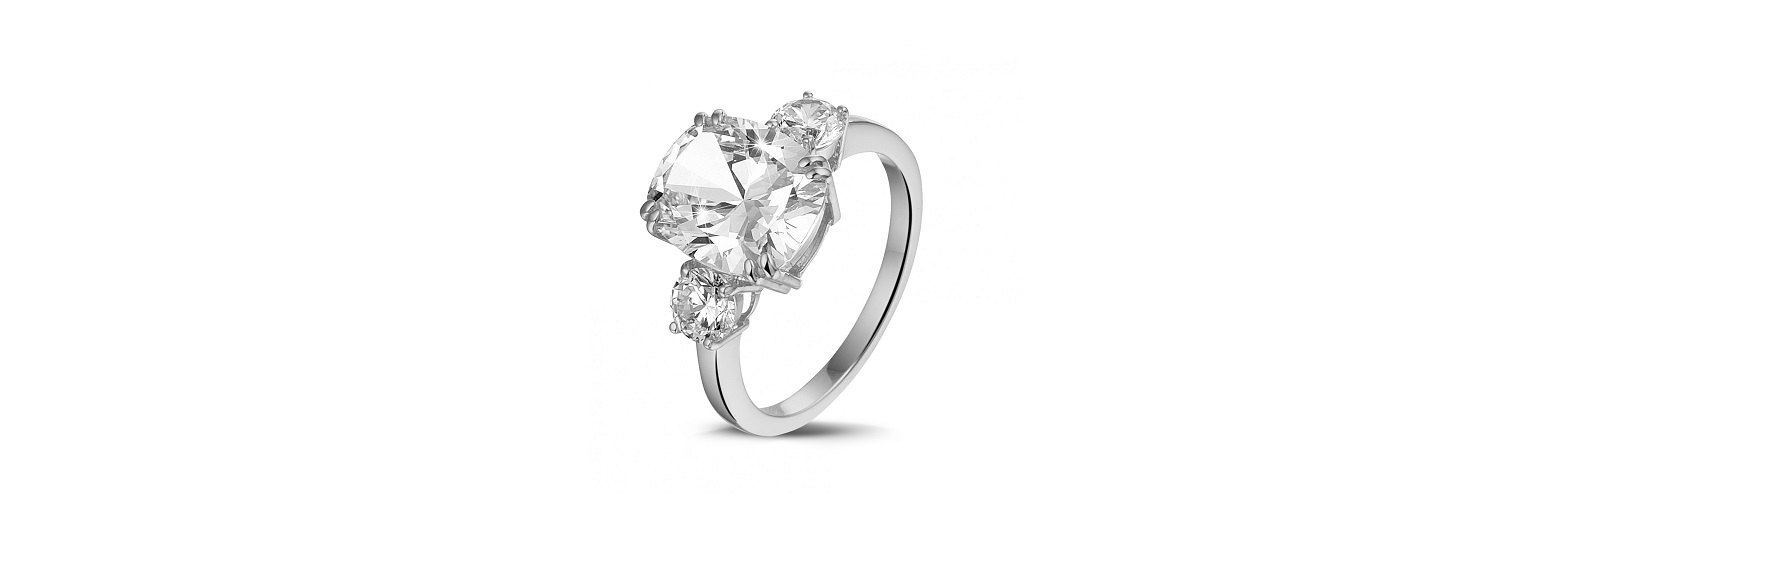 Eligir un anillo de compromiso con un diamante de 4 quilates